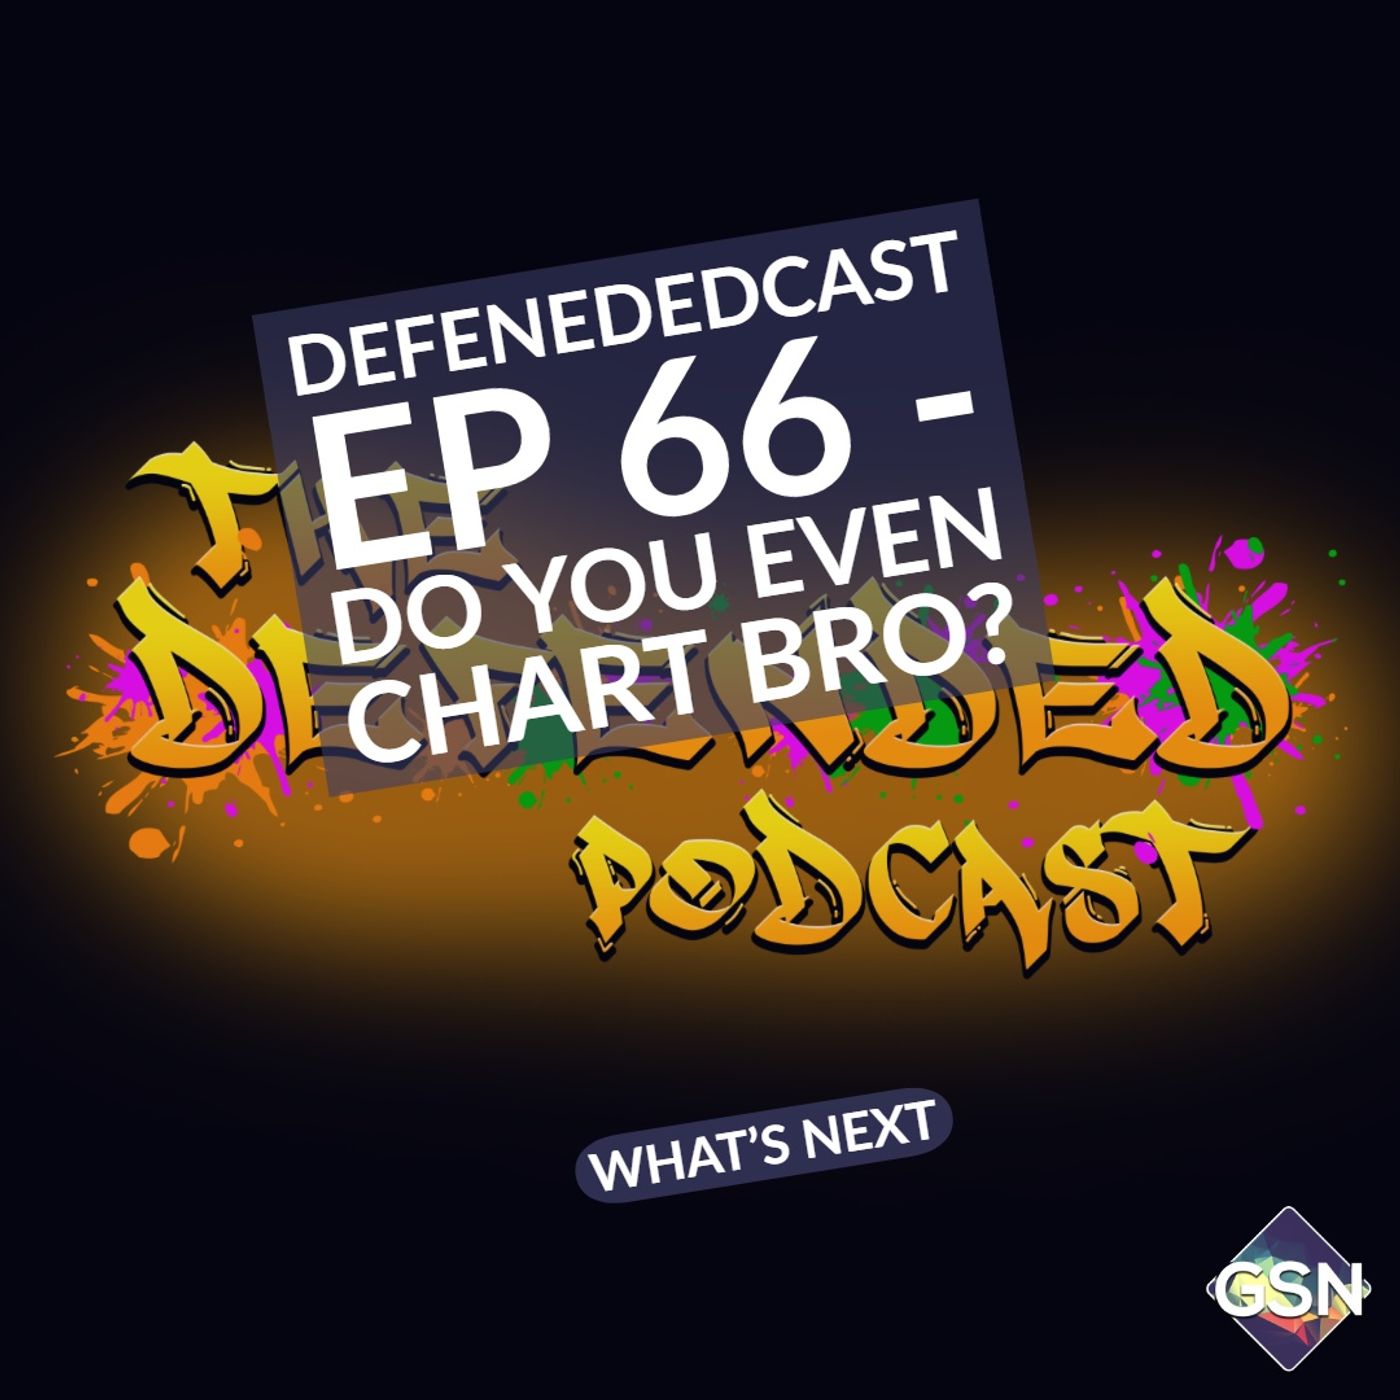 Defendedcast - Do you even chart bro?